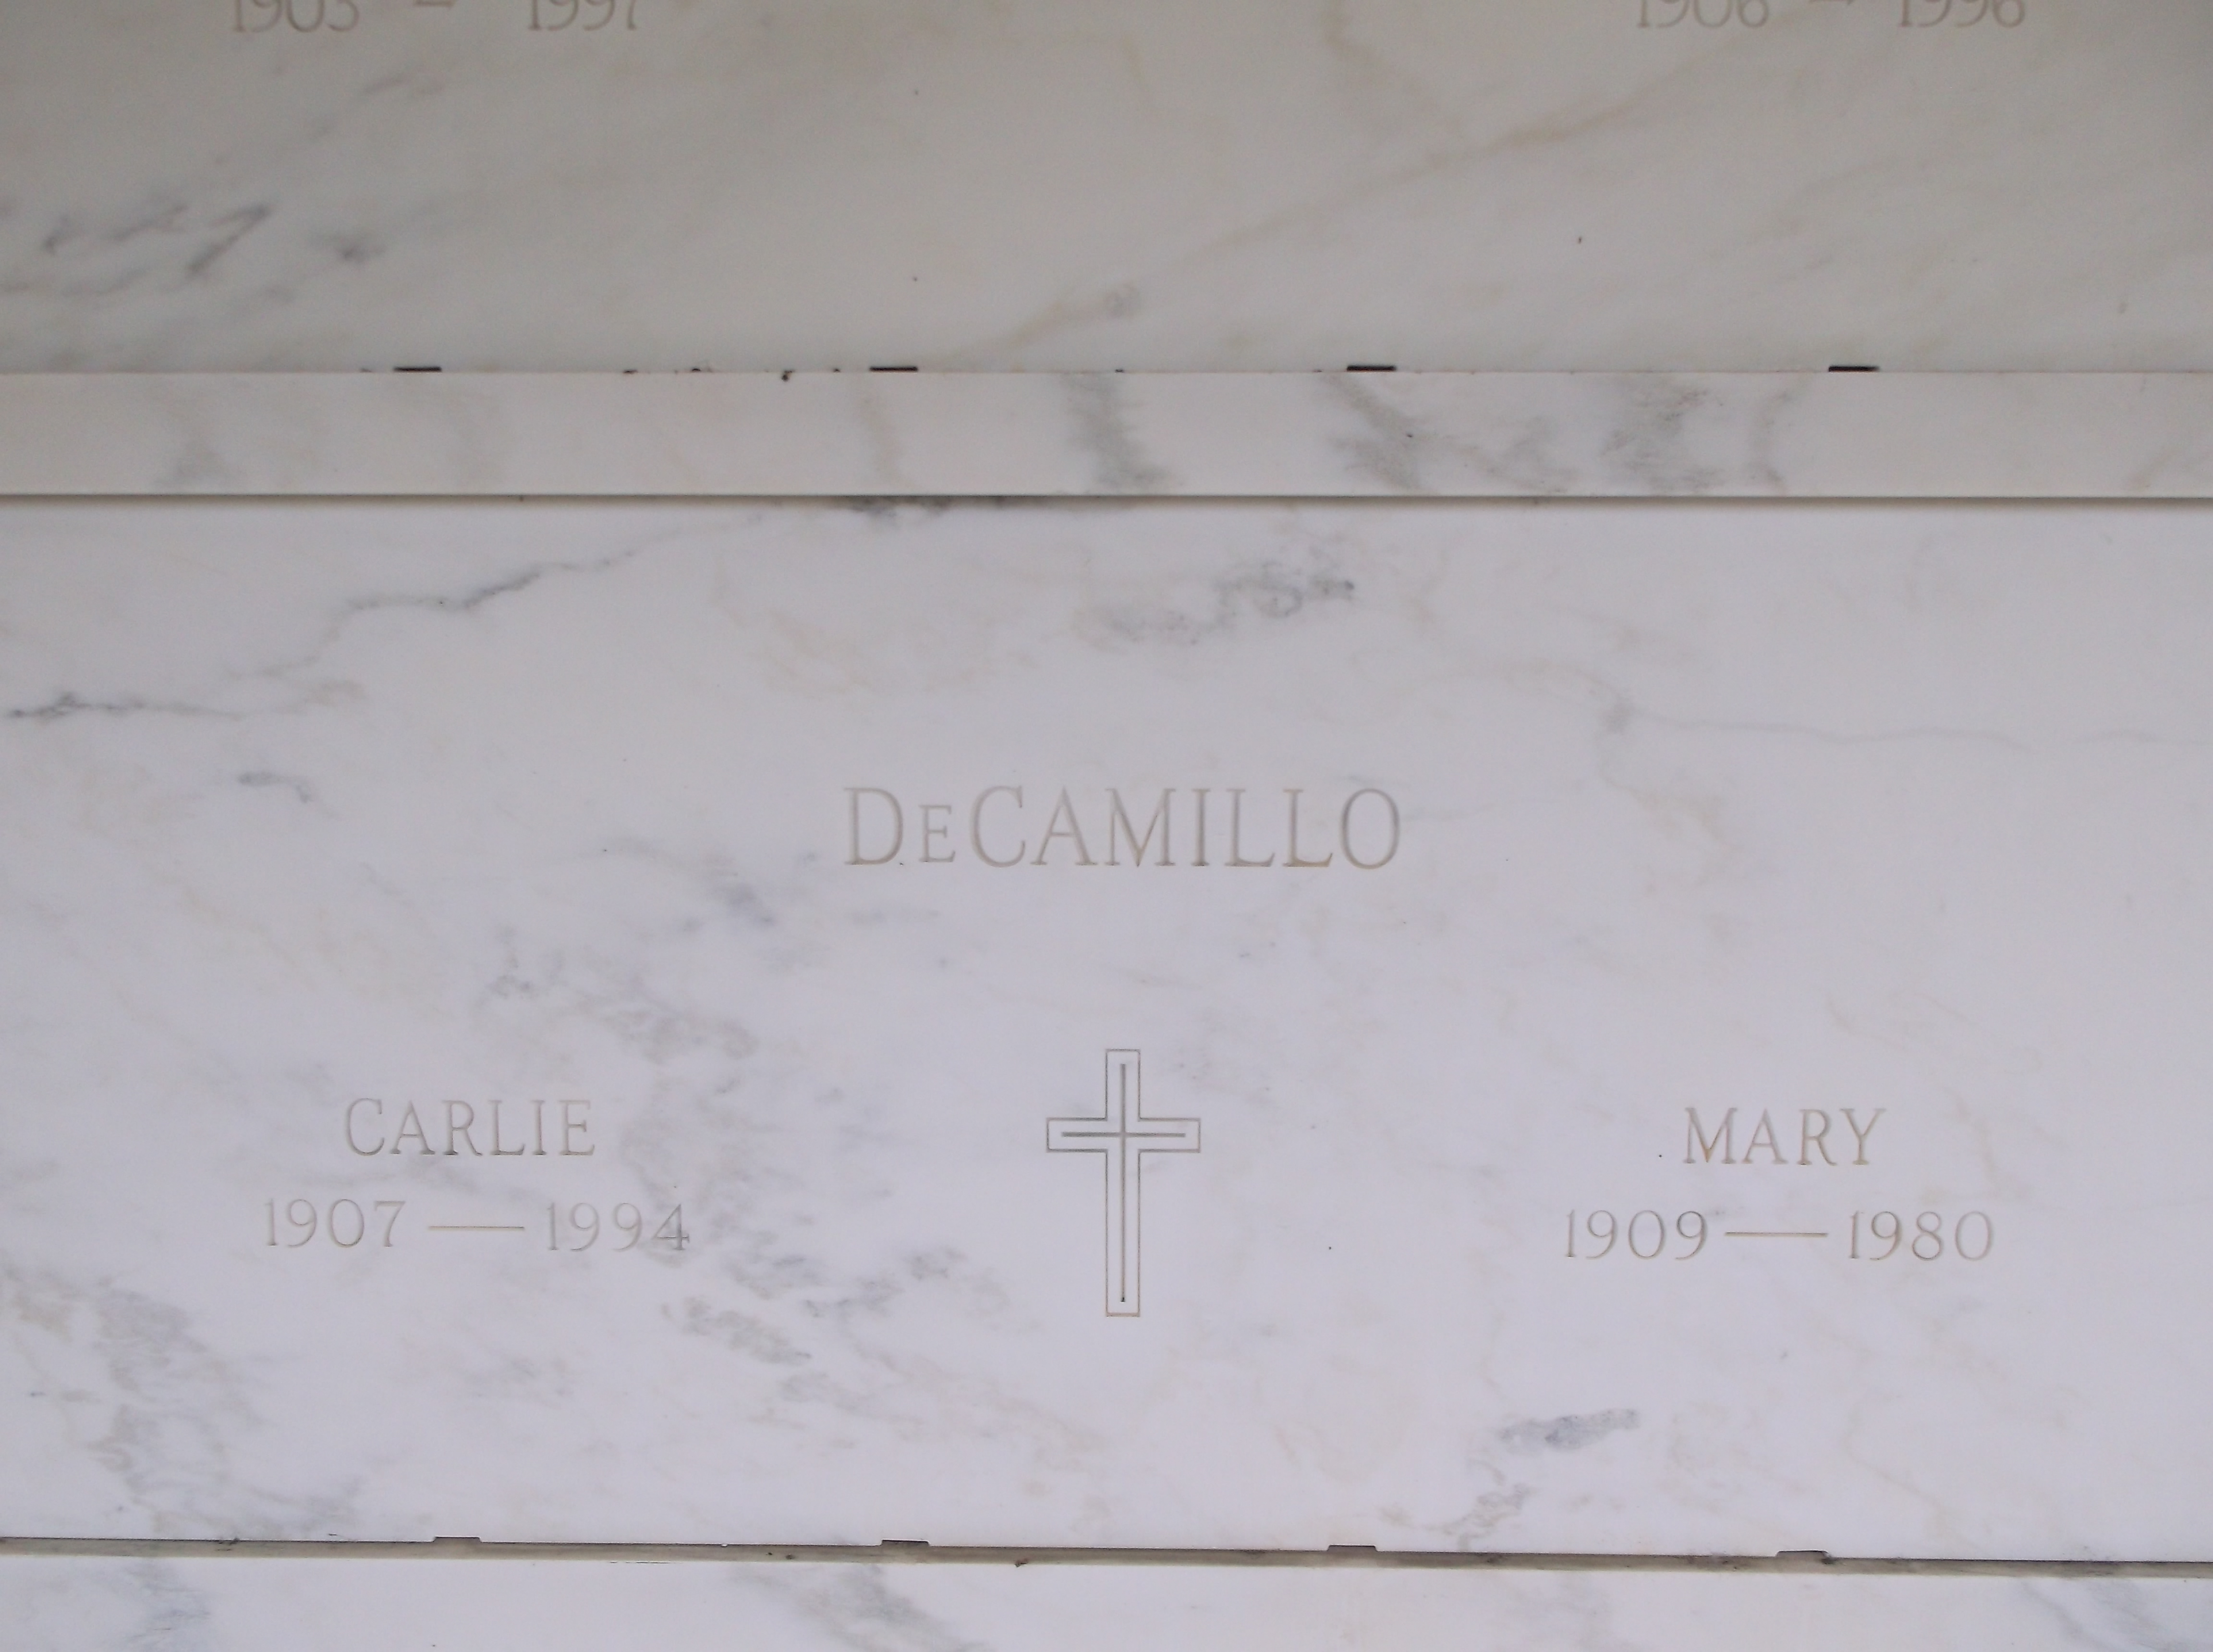 Mary DeCamillo